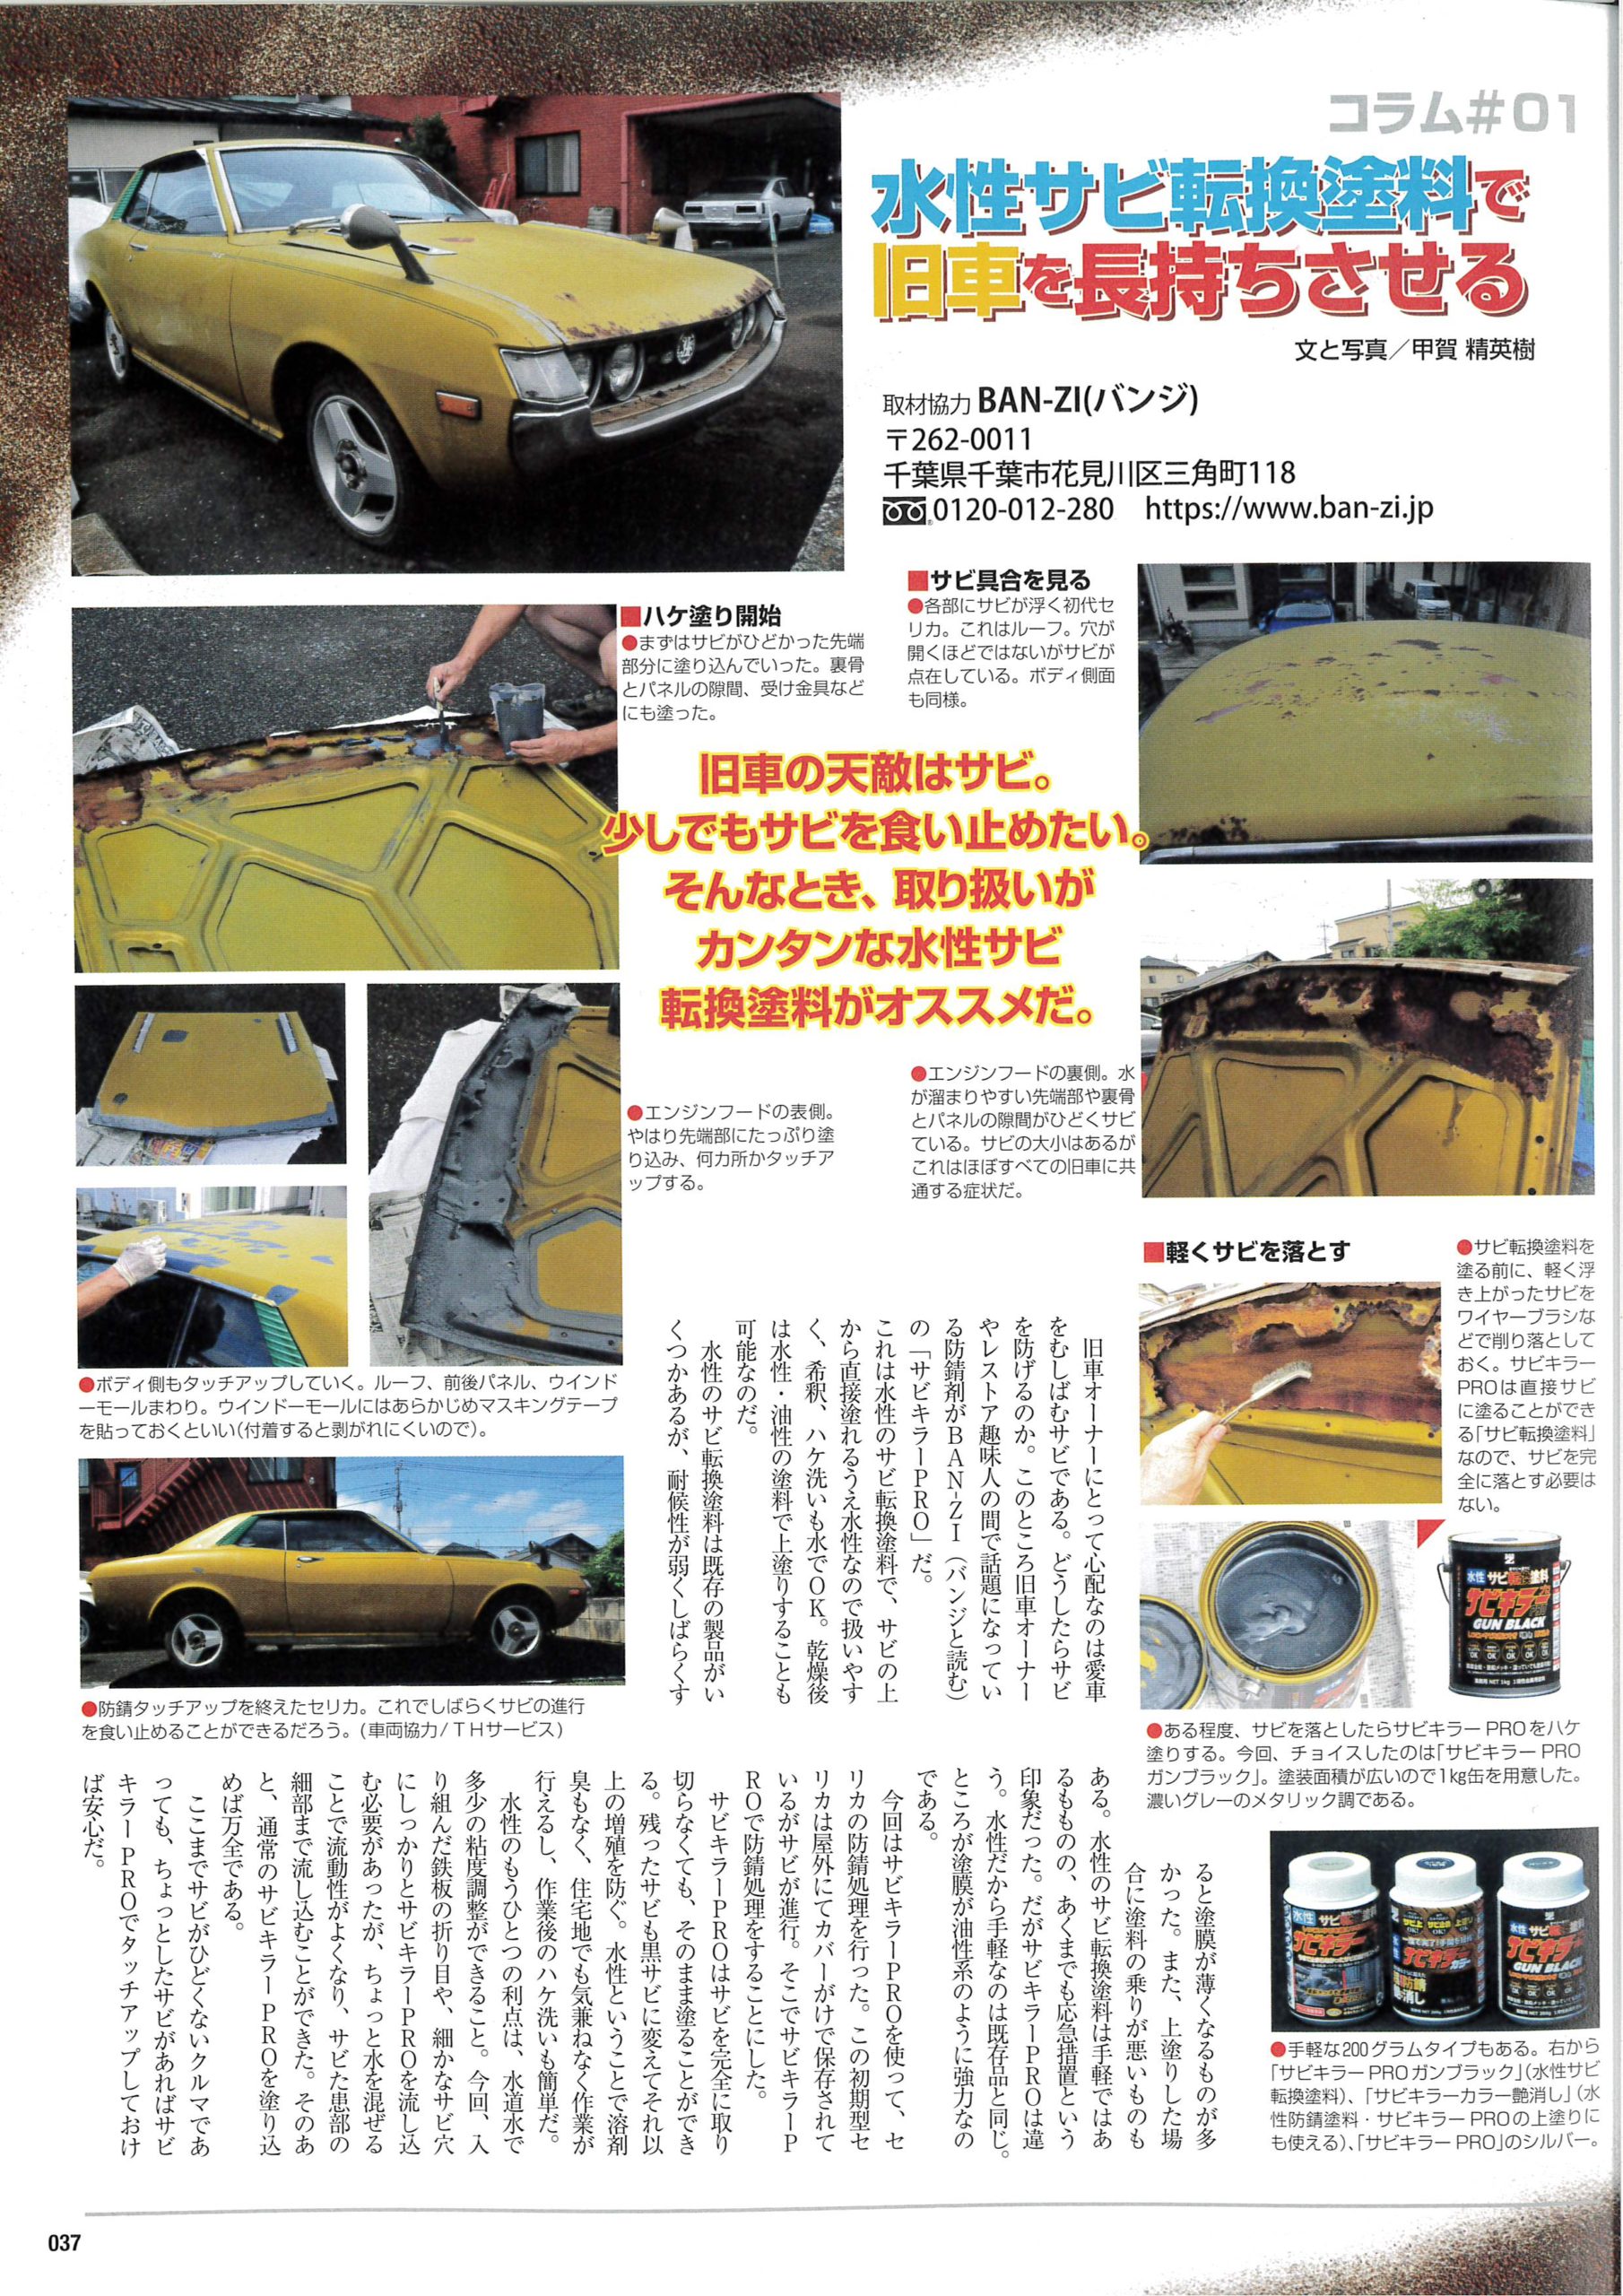 21年3月11日発売 旧車オーナー読本 掲載 Ban Zi